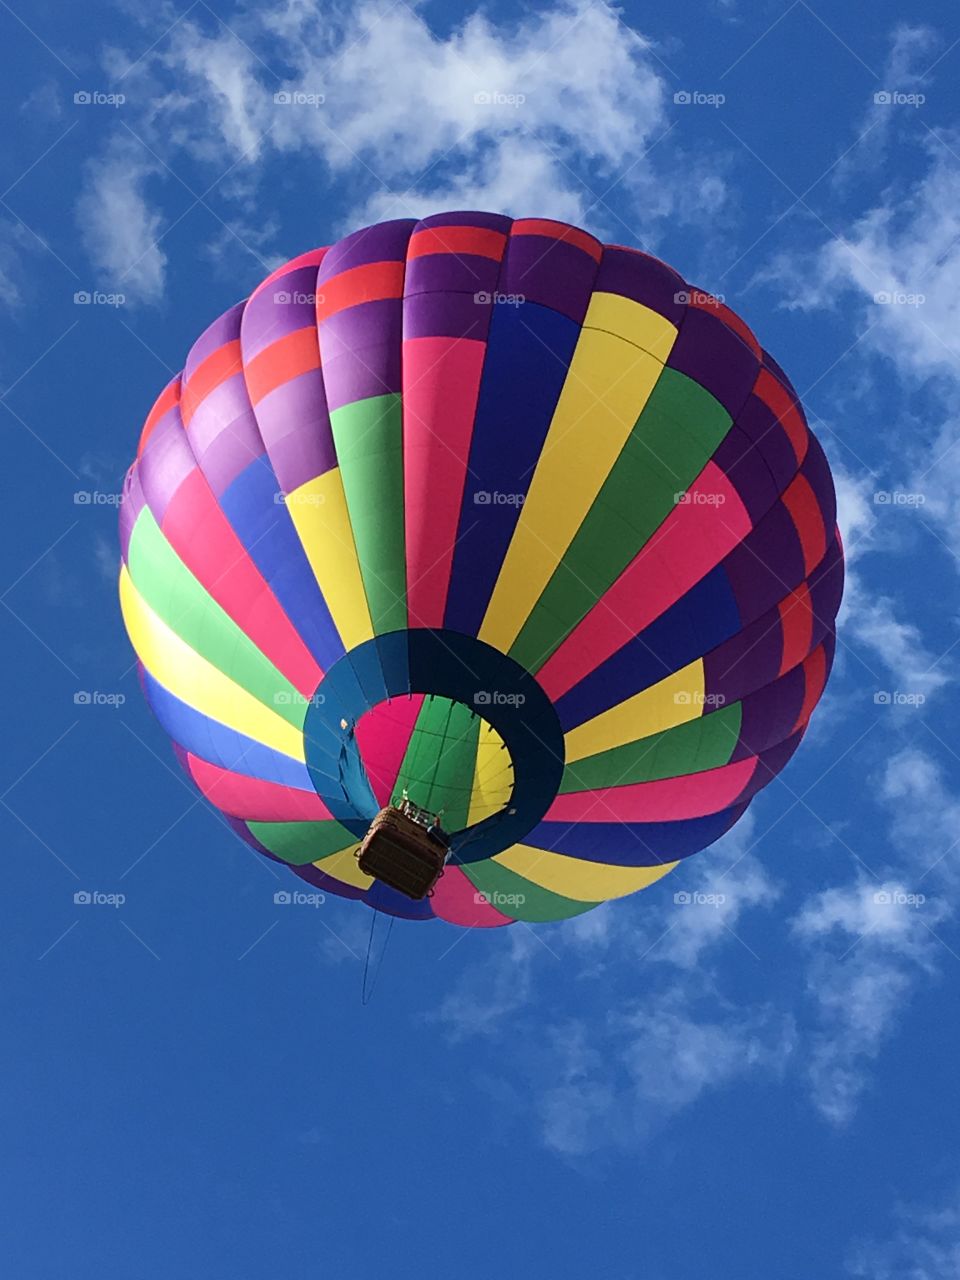 Balloon Fiesta 2018, Albuquerque, NM